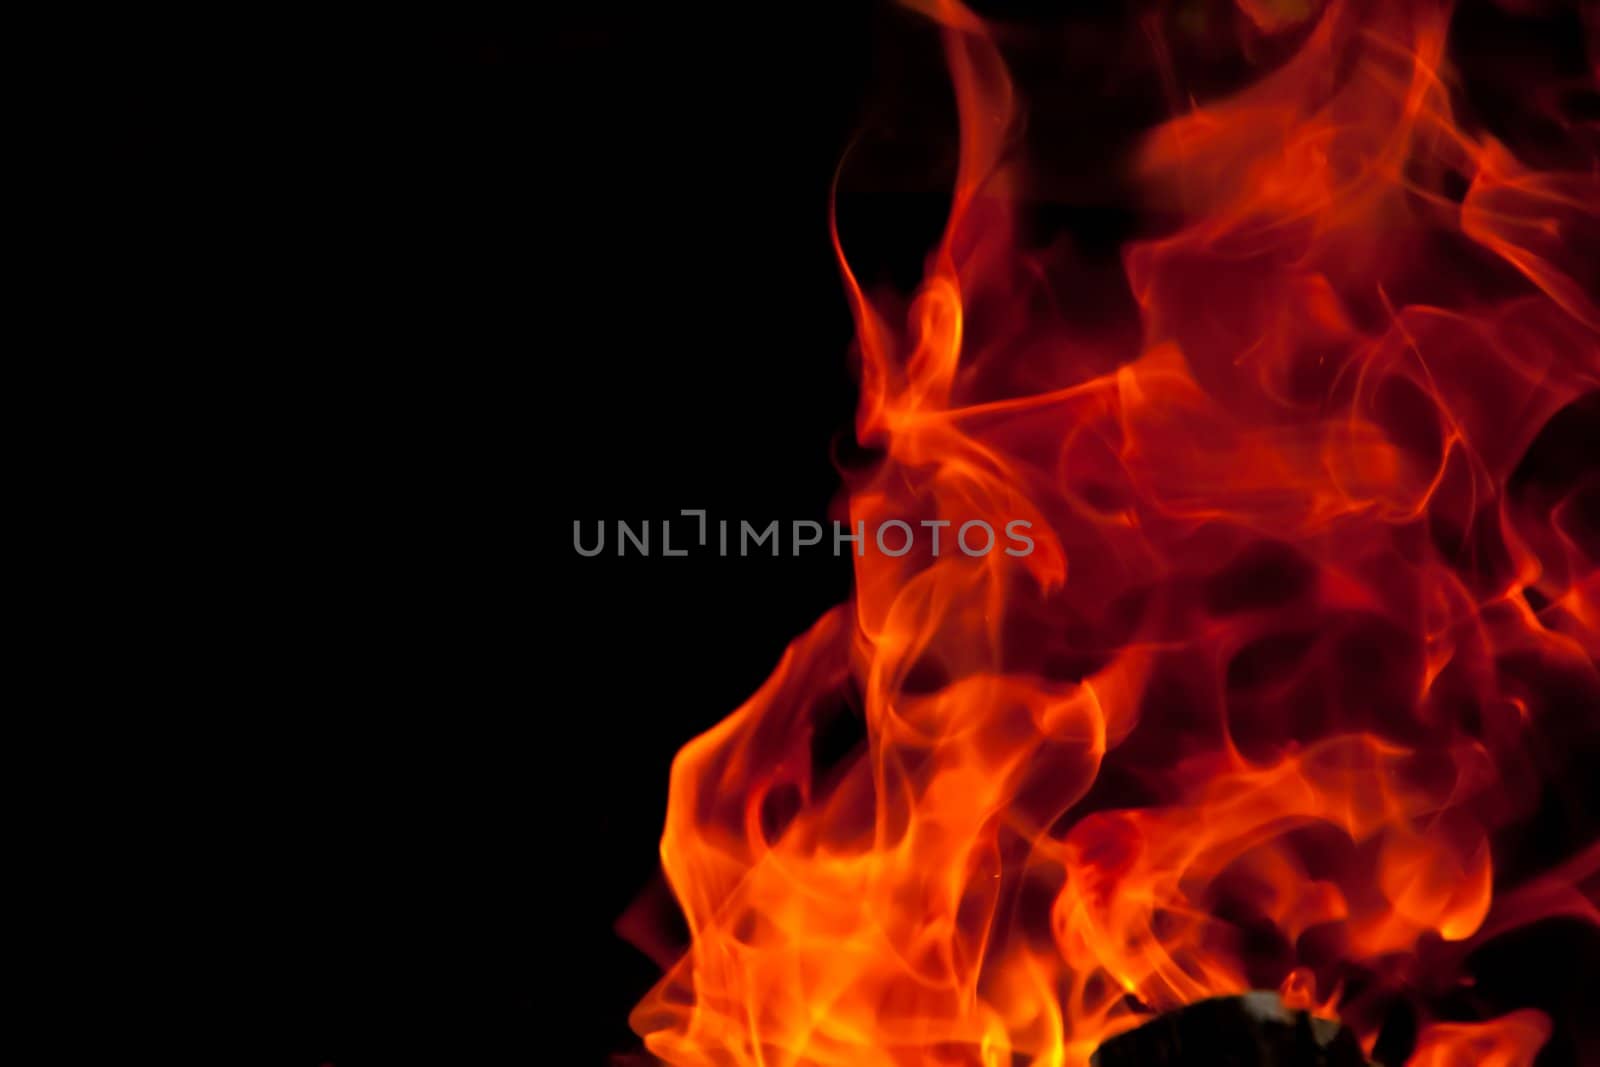 Flickering Flames by RachelD32